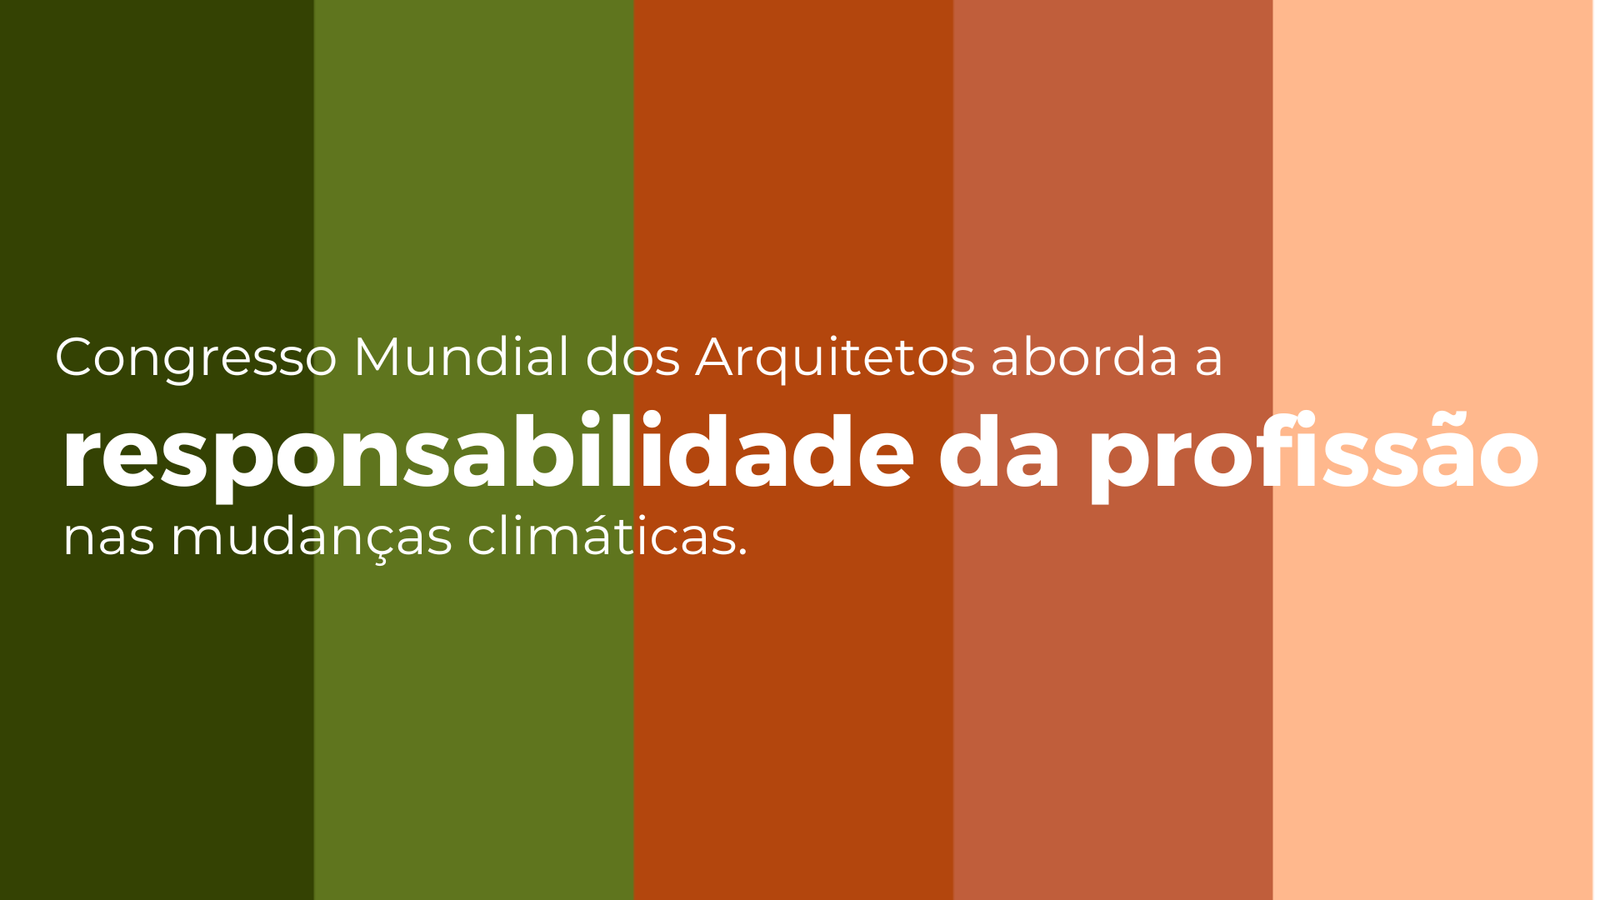 Congresso Mundial dos Arquitetos aborda a responsabilidade da profissão nas mudanças climáticas.